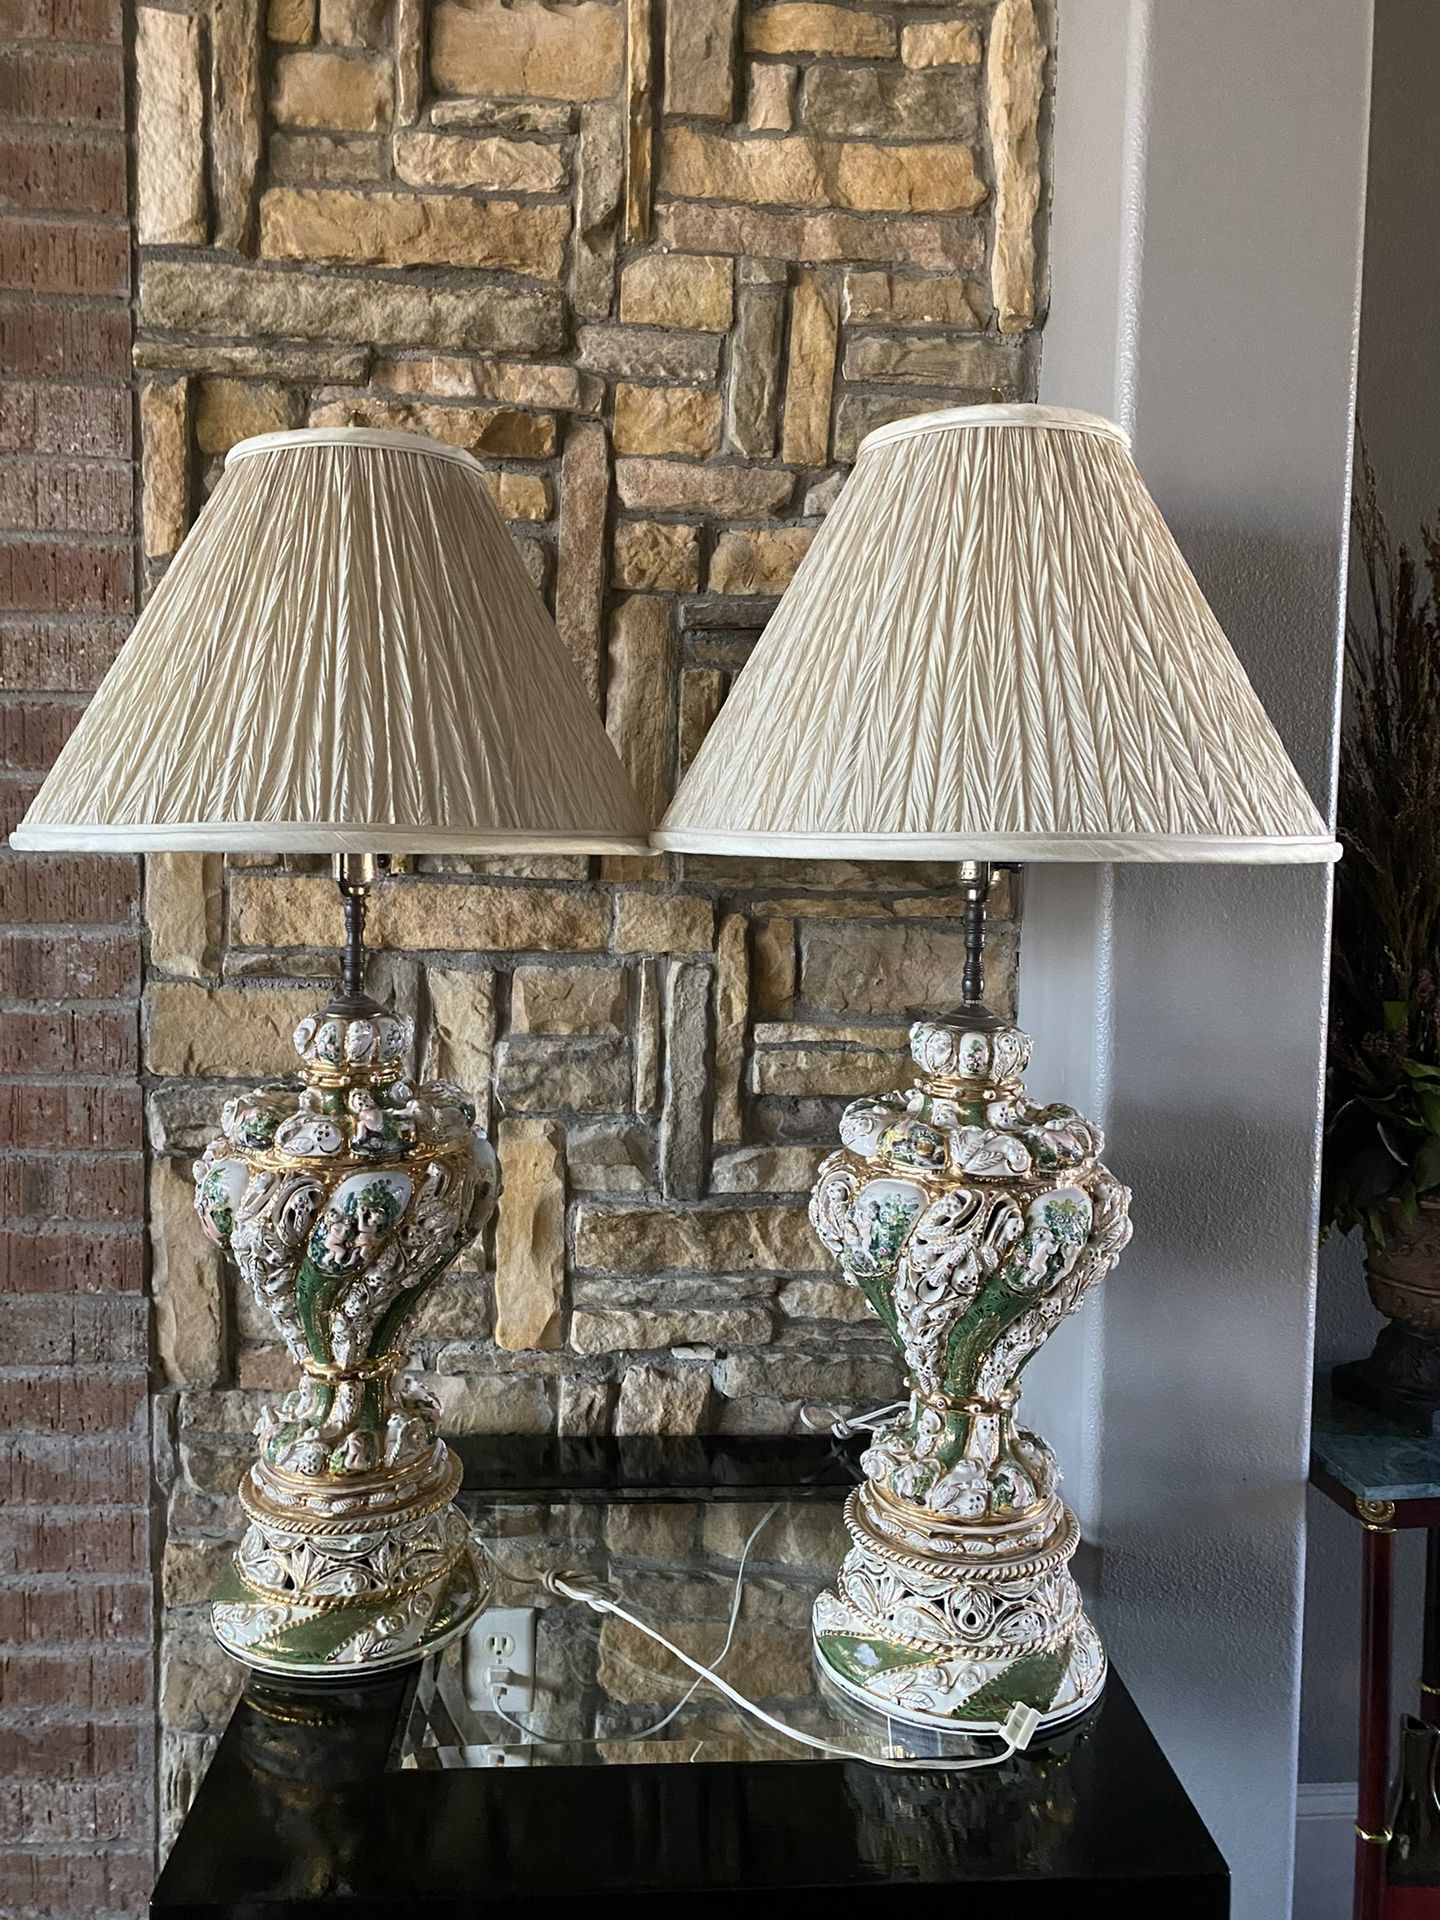 2 Vintage Antique Lamps